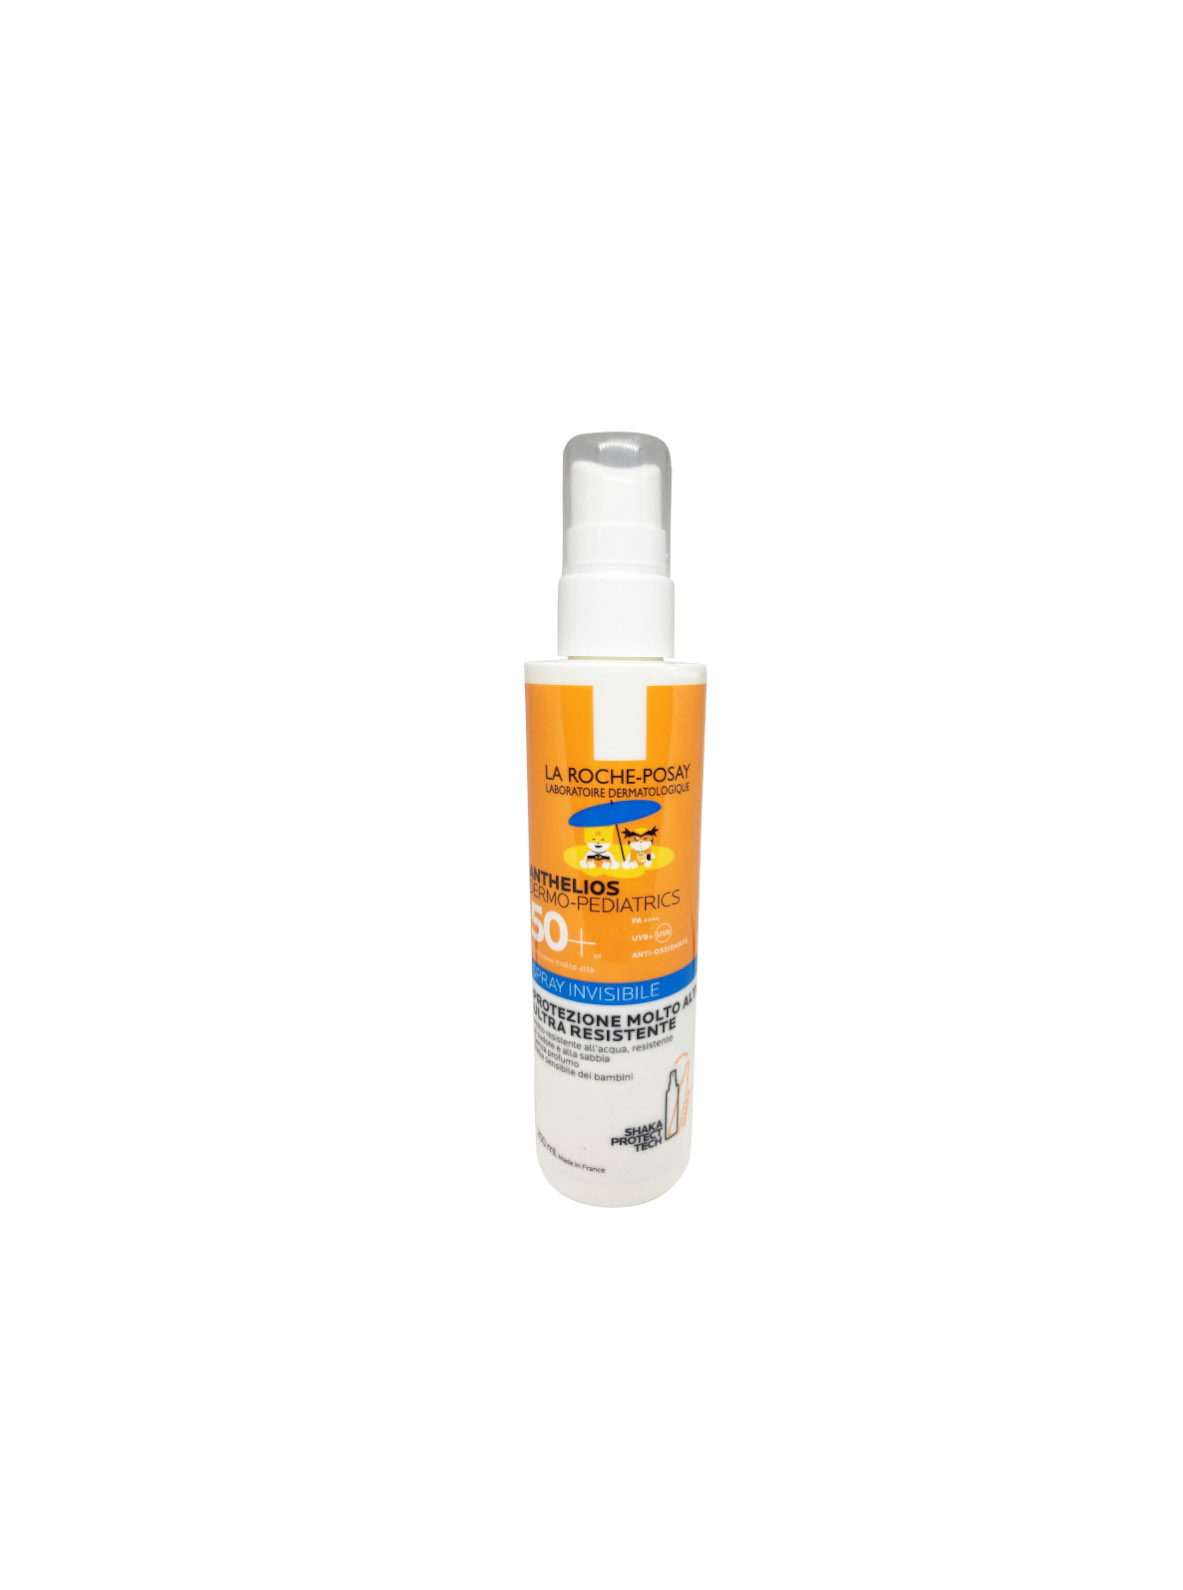 La roche posay - solare anthelios dermo-pediatrics spray 50+ 200 ml - LA ROCHE POSAY